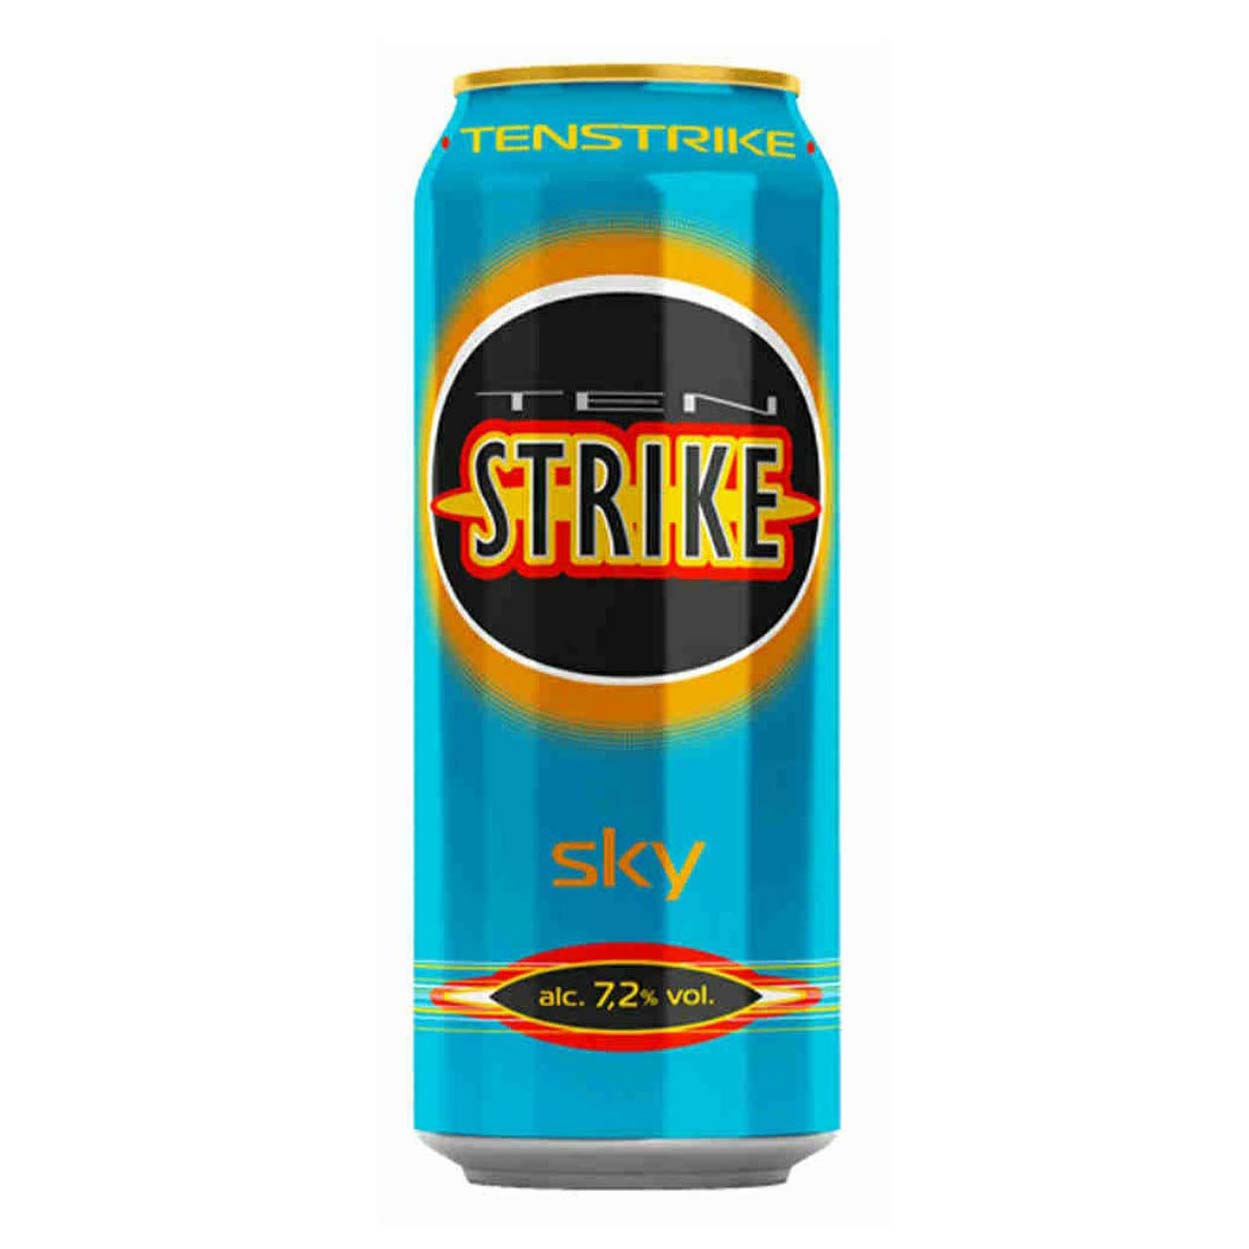 Страйк энергетики. Напиток са Тен страйк Скай алк 7.2% мл жб 0.45. Ten Strike Dark коктейль ГАЗ 7.2 0.45Л. Напиток слабоалкогольный газированный ten Strike Sky. Энергетический напиток ten Strike Sky.